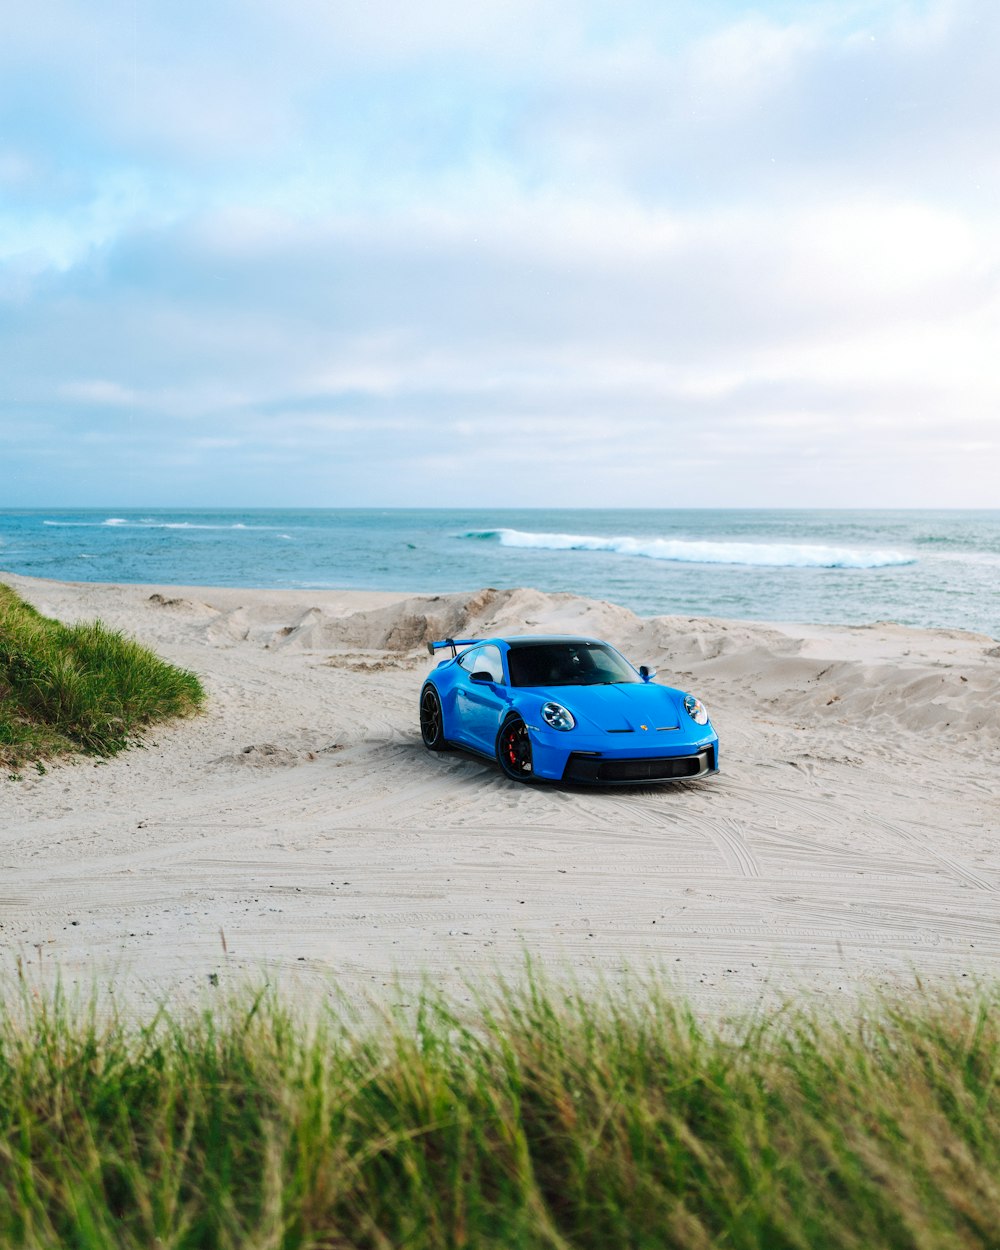 Une voiture de sport bleue garée sur une plage de sable